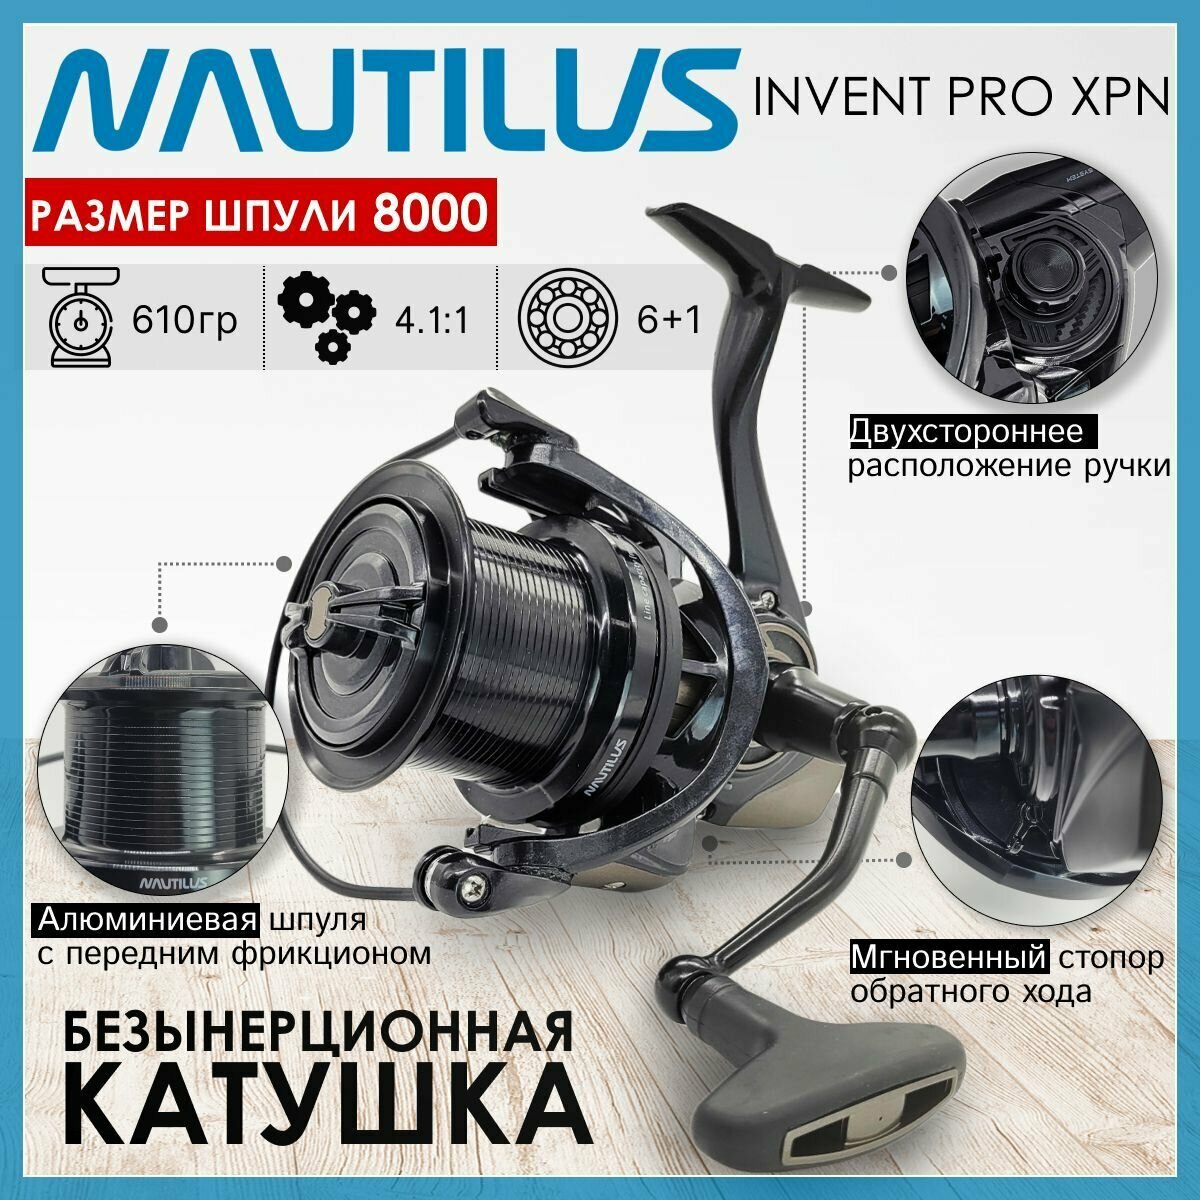 Катушка Nautilus INVENT PRO XPN 8000, с пердним фрикционом